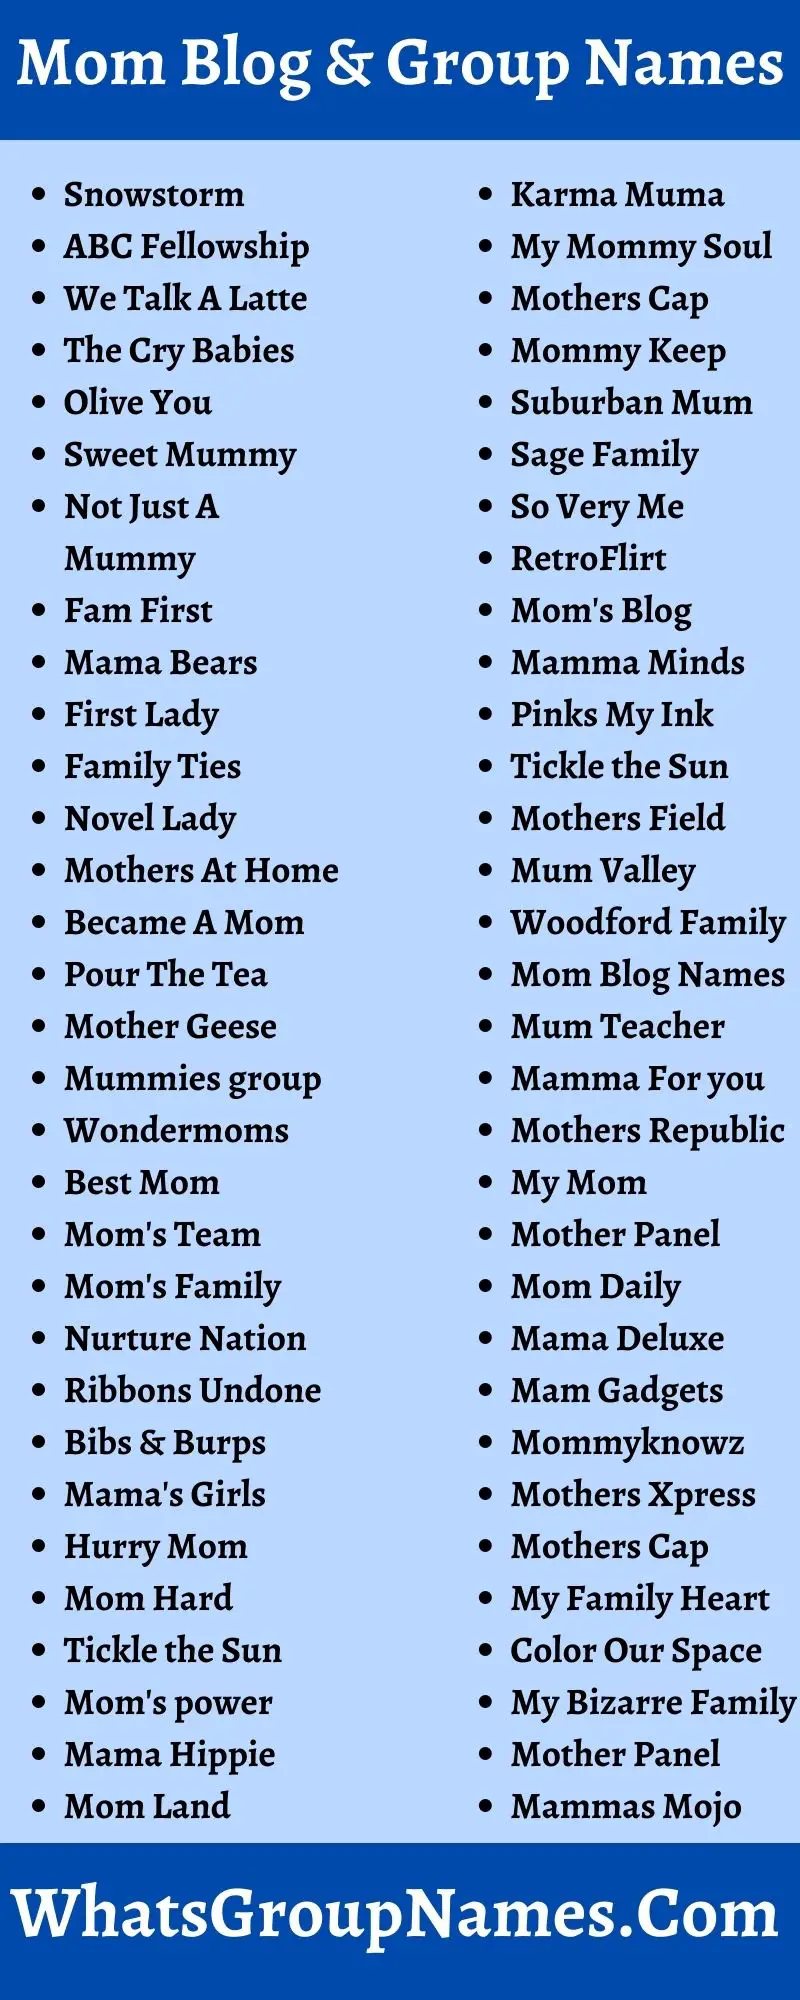 Mom Blog & Group Names